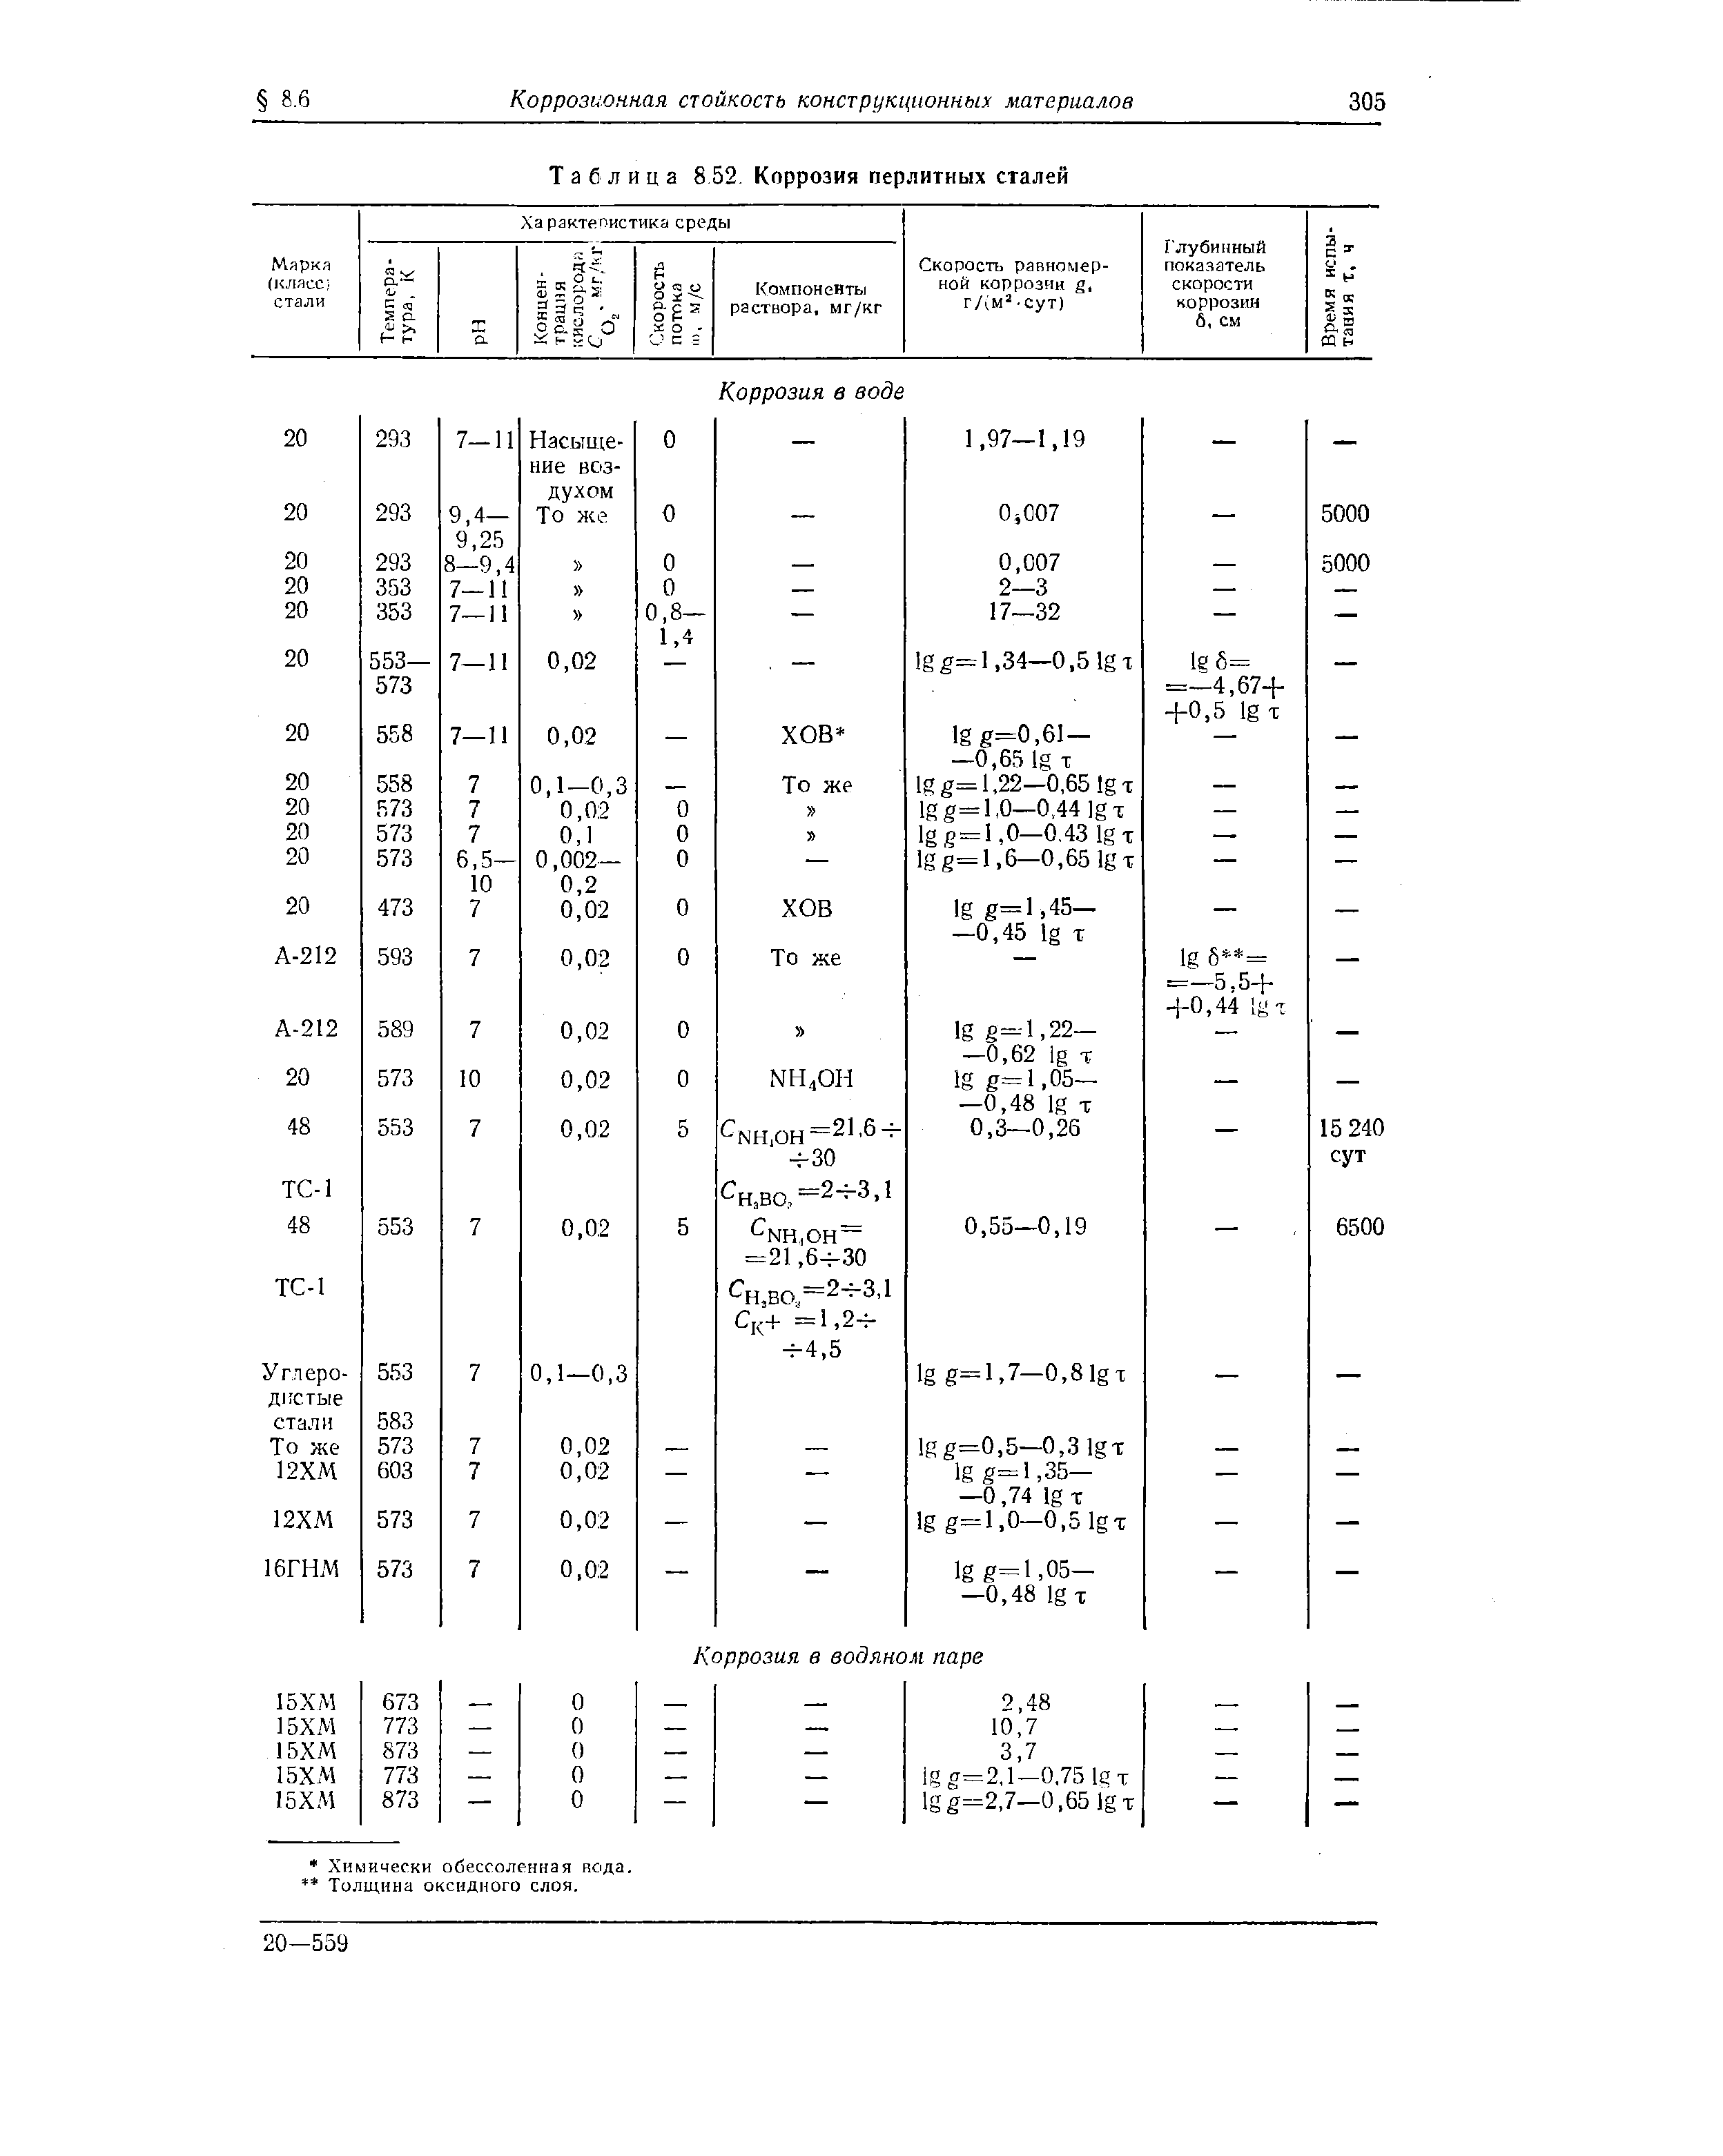 Таблица 8 52 Коррозия перлитных сталей
